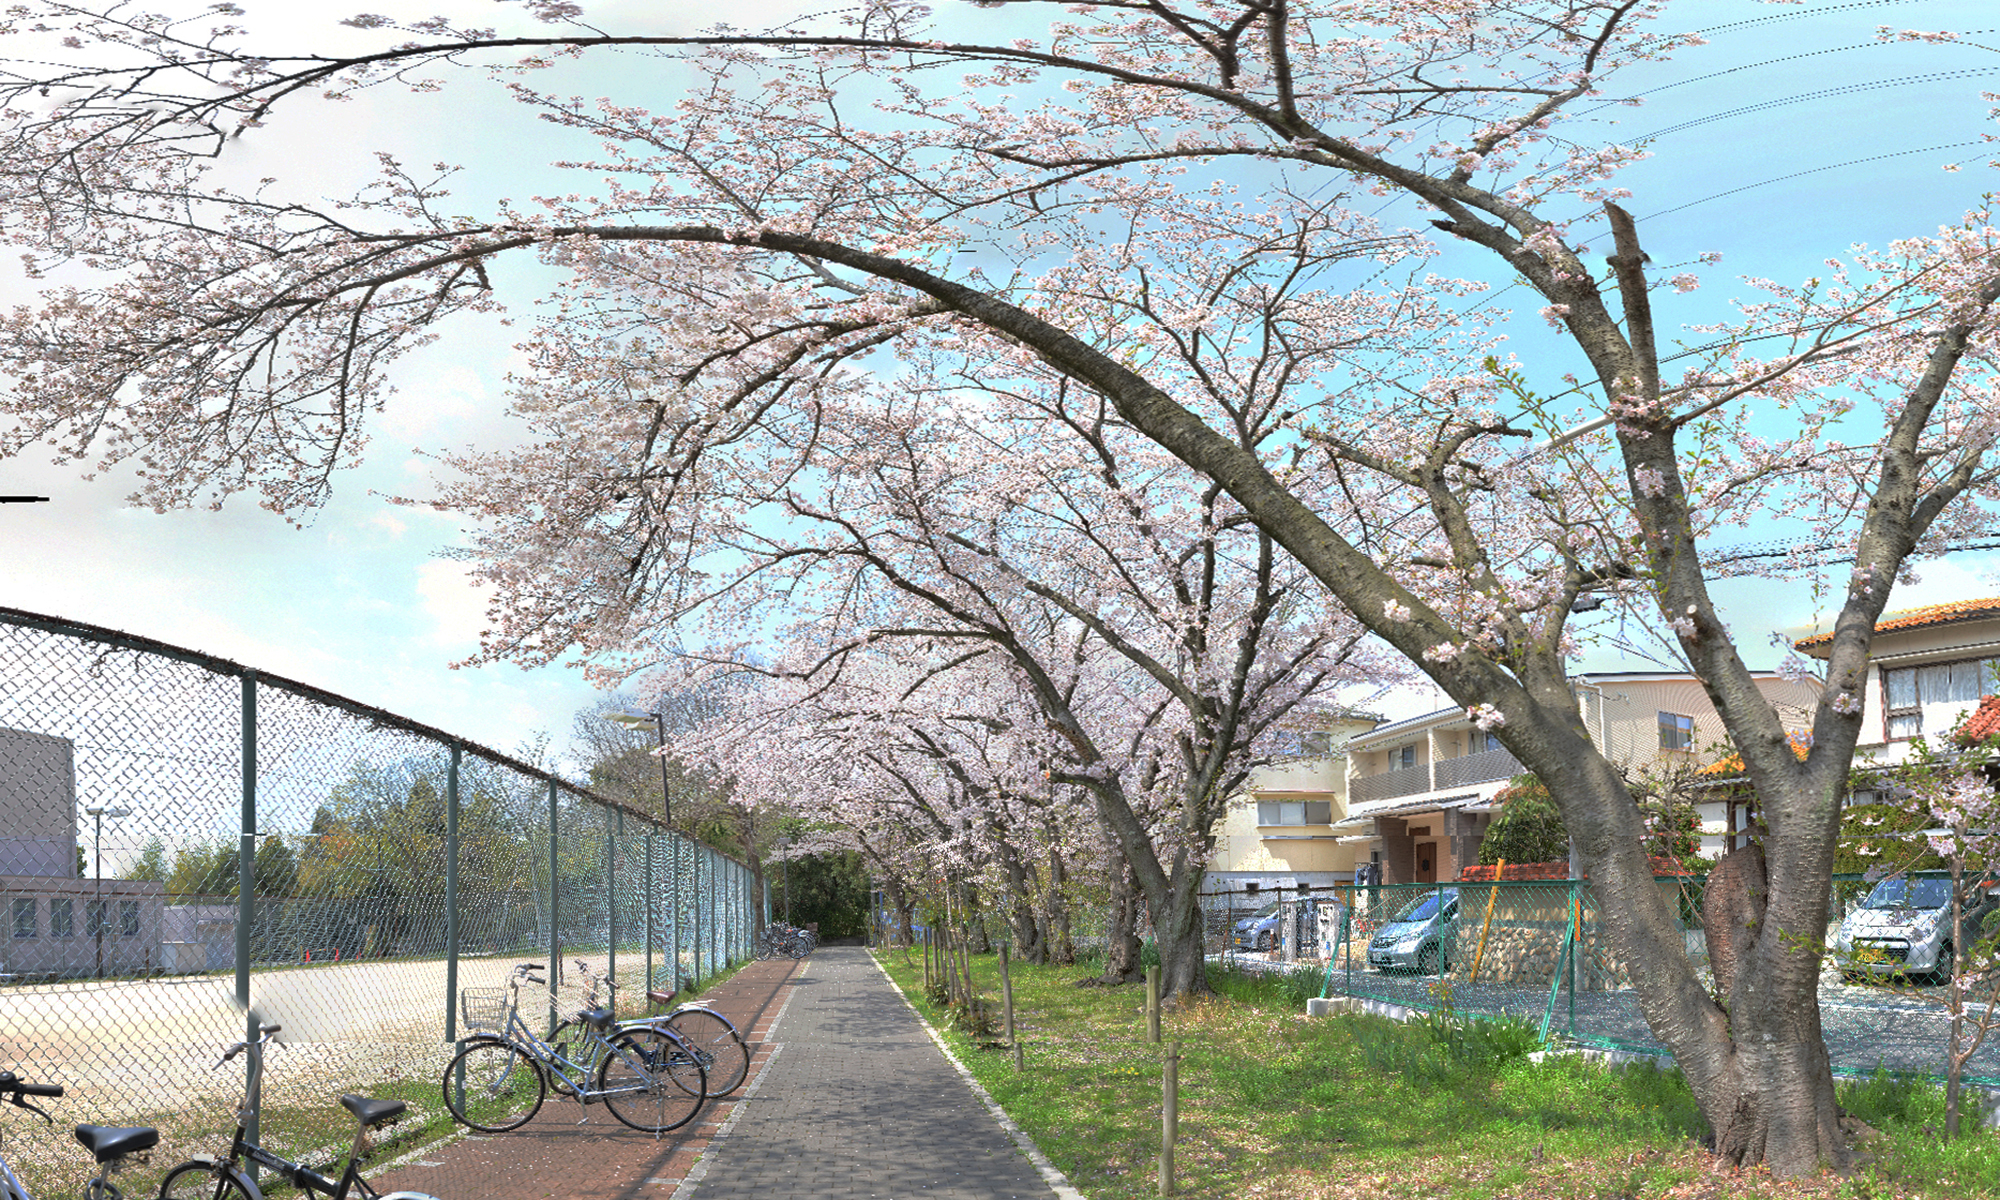 春の景色 Spring Scenery 日本データ制作所 Japan Data Production